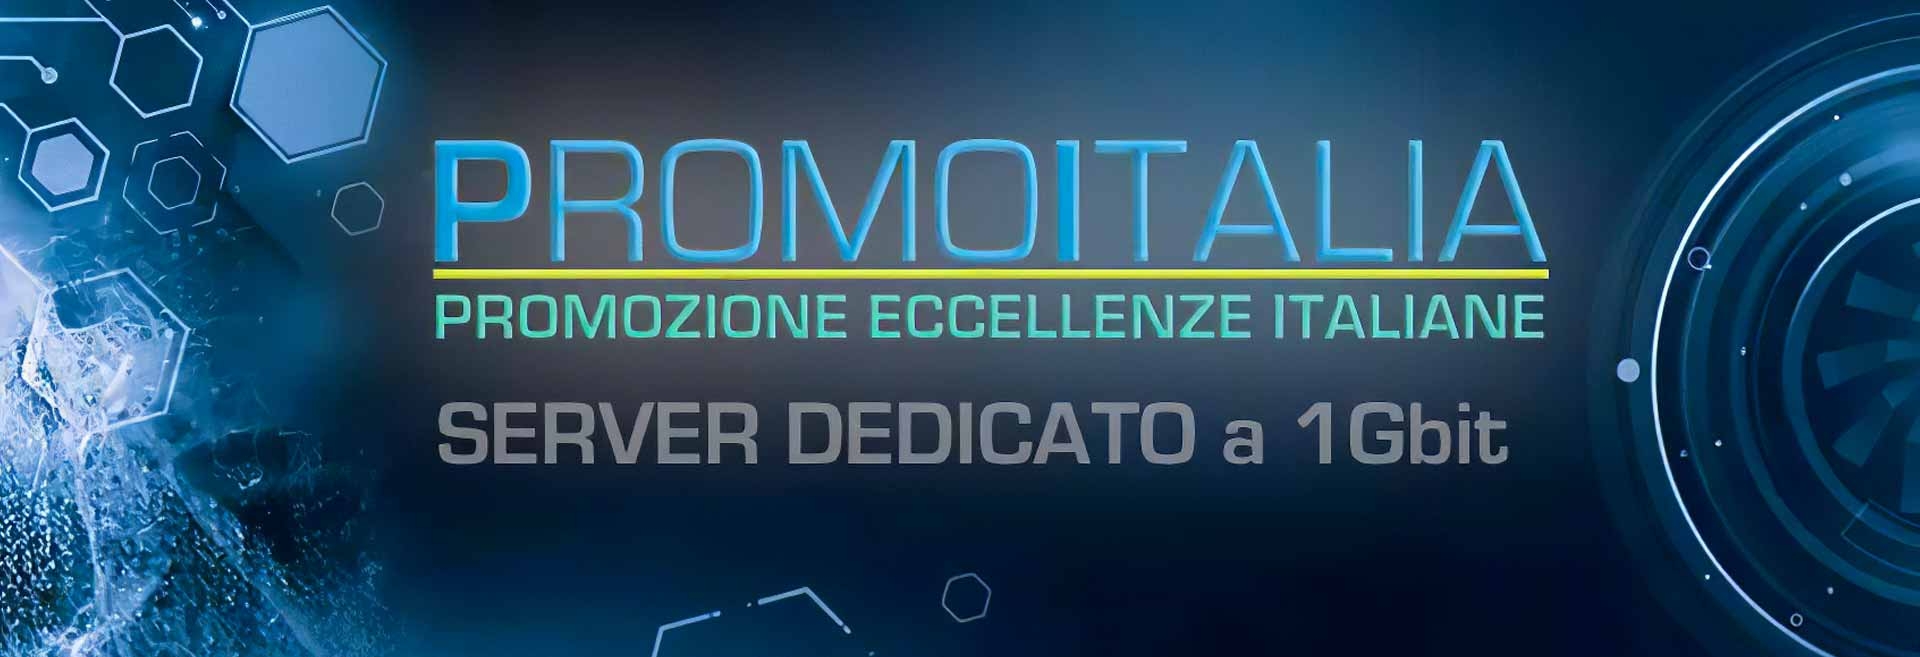 Promoitalia: online il nuovo server dedicato a 1 Gbit/s